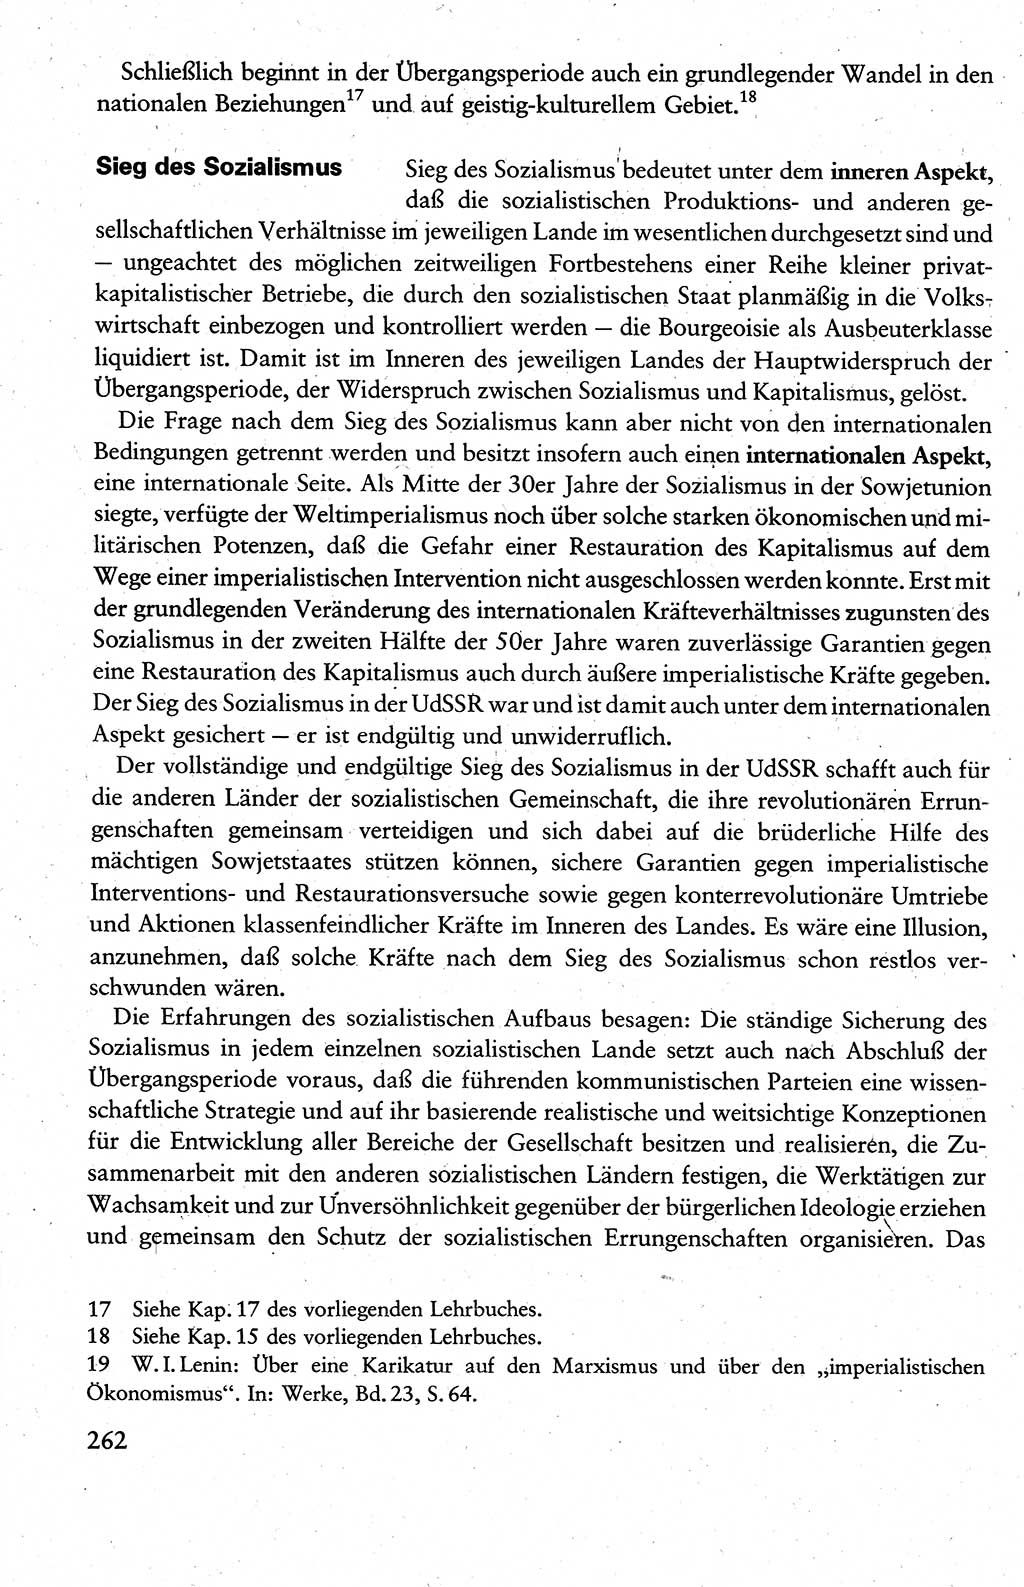 Wissenschaftlicher Kommunismus [Deutsche Demokratische Republik (DDR)], Lehrbuch für das marxistisch-leninistische Grundlagenstudium 1983, Seite 262 (Wiss. Komm. DDR Lb. 1983, S. 262)